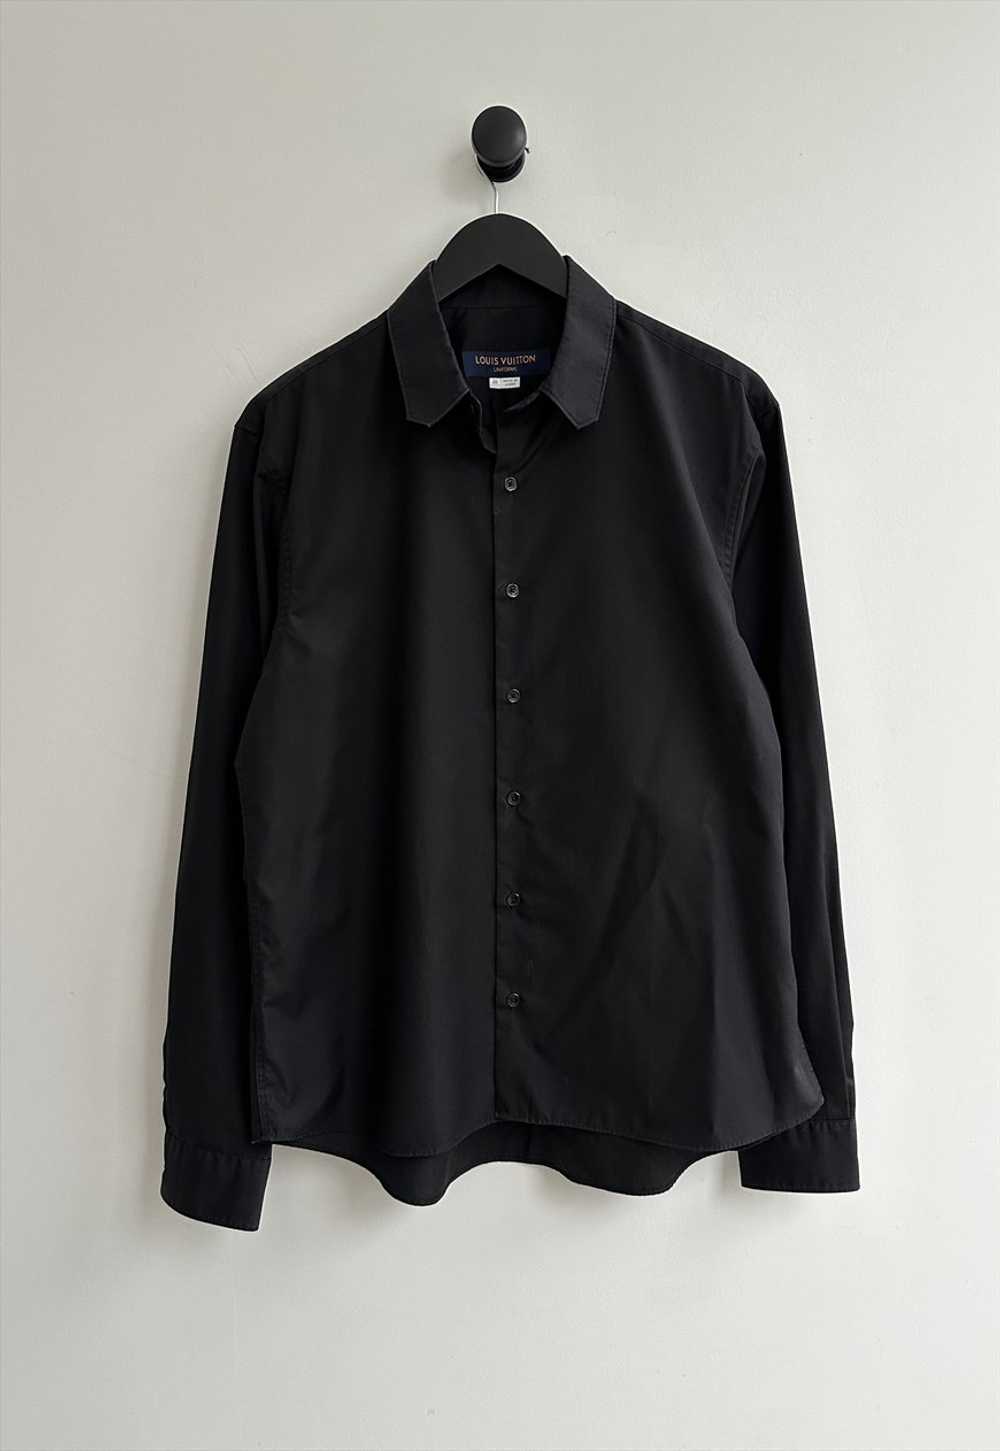 Louis Vuitton Uniforms Black Shirt - image 1